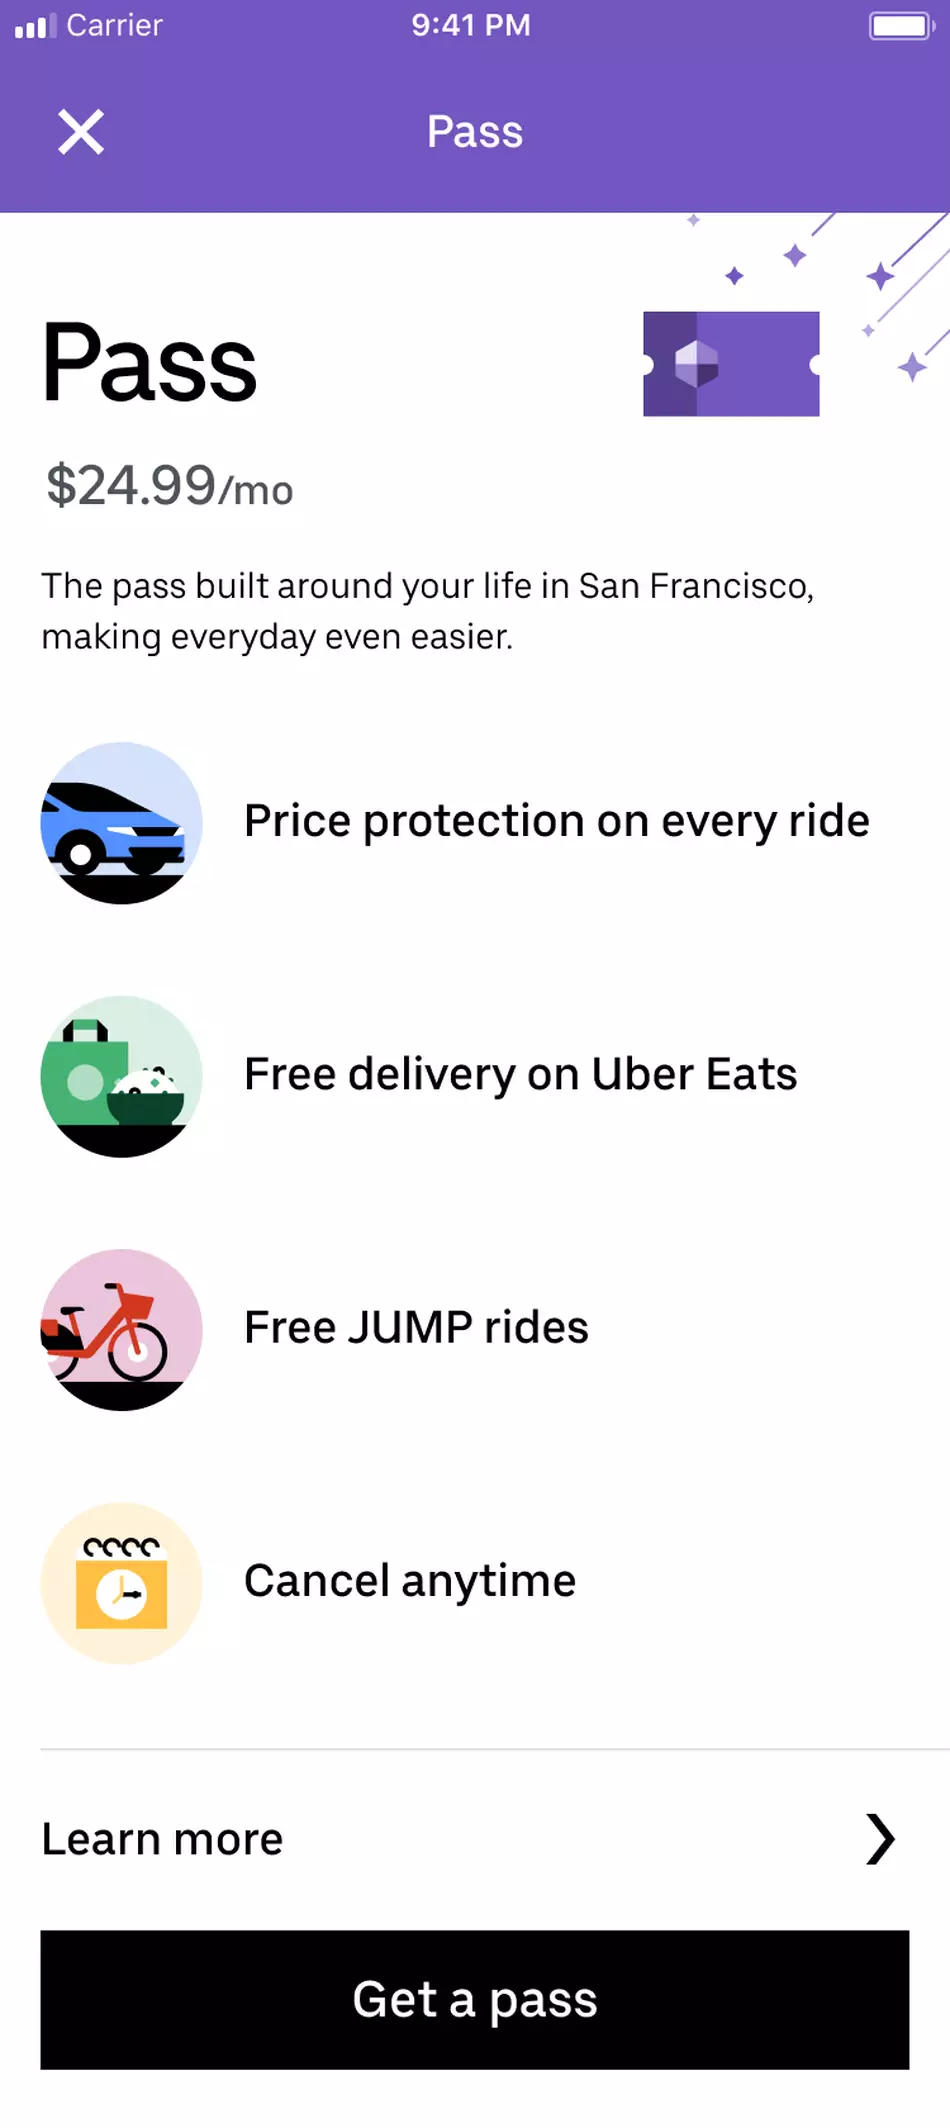 Описание всех услуг абонемента от Uber